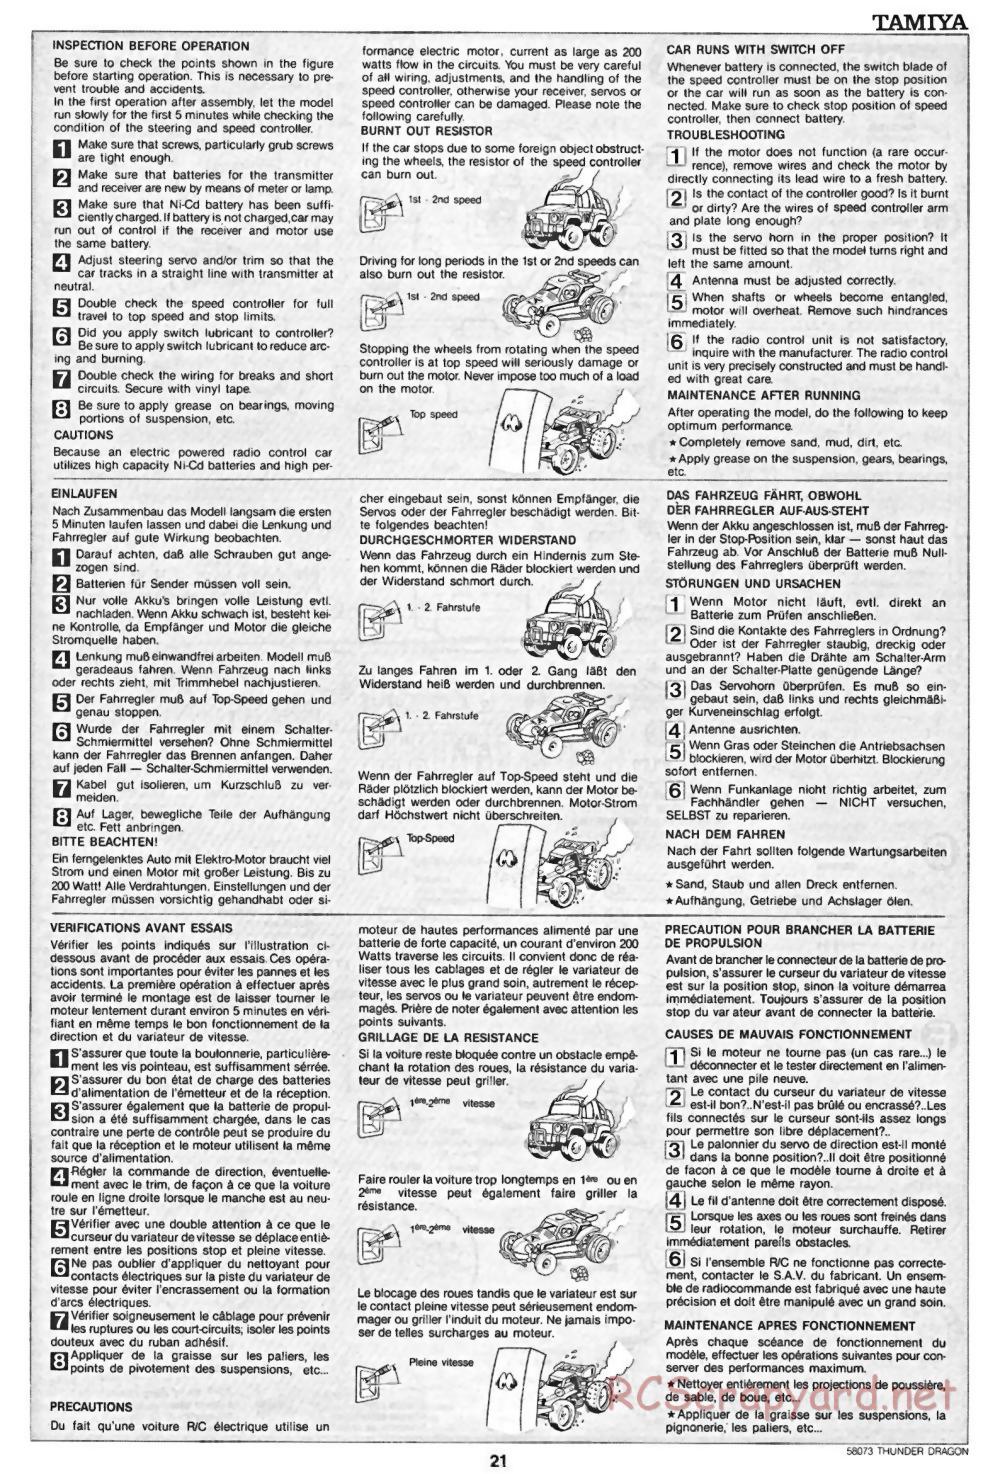 Tamiya - Thunder Dragon - 58073 - Manual - Page 21